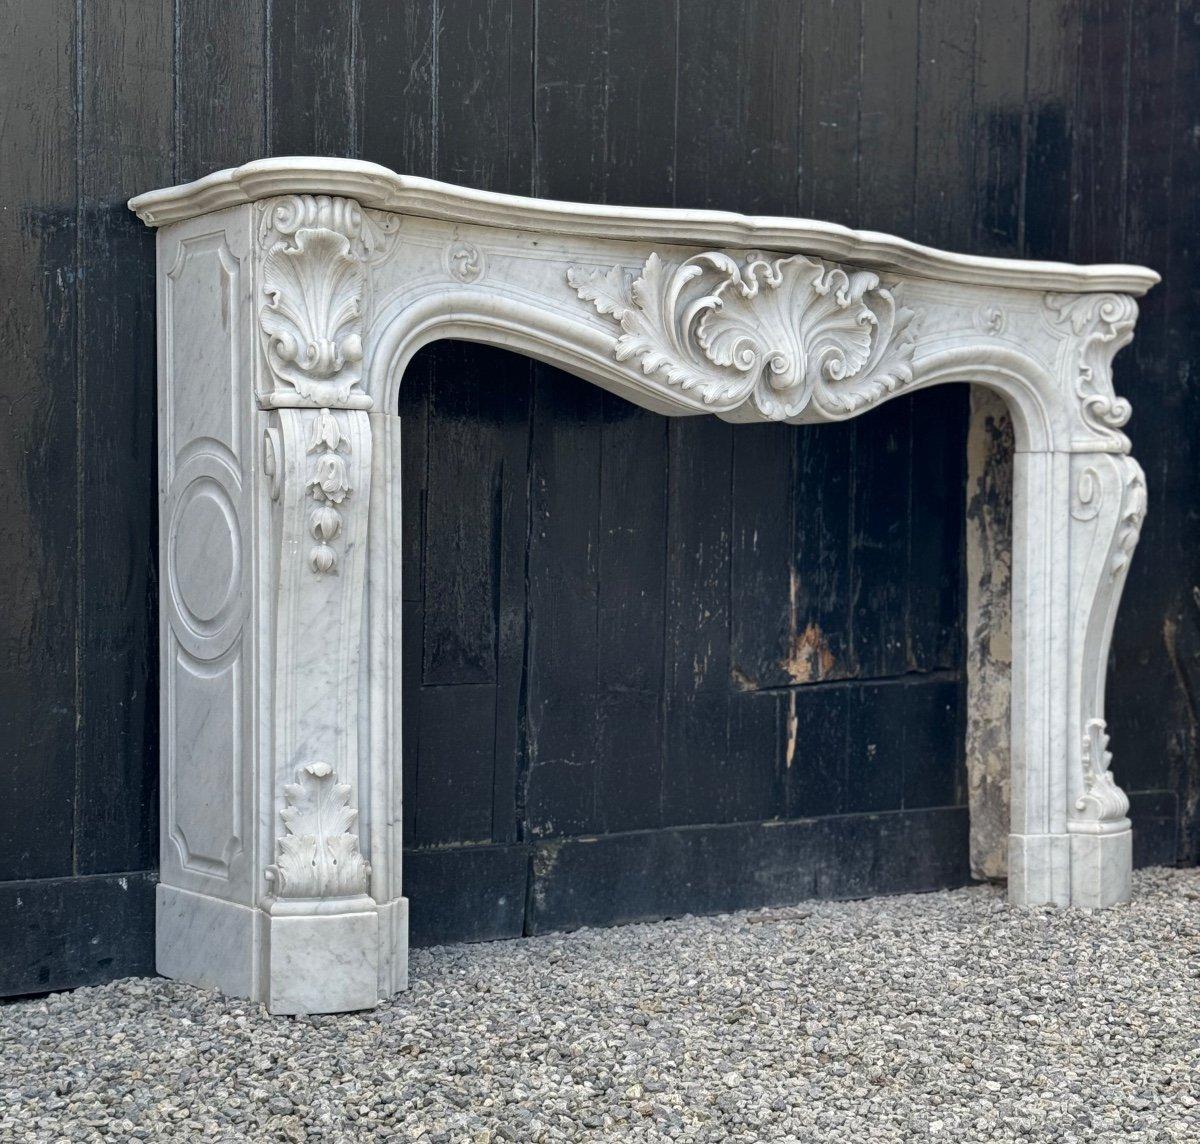 Imposante cheminée de style Louis XV, en marbre de Carrare vers 1880 

Dimensions du foyer : 83 x 129,5 cm